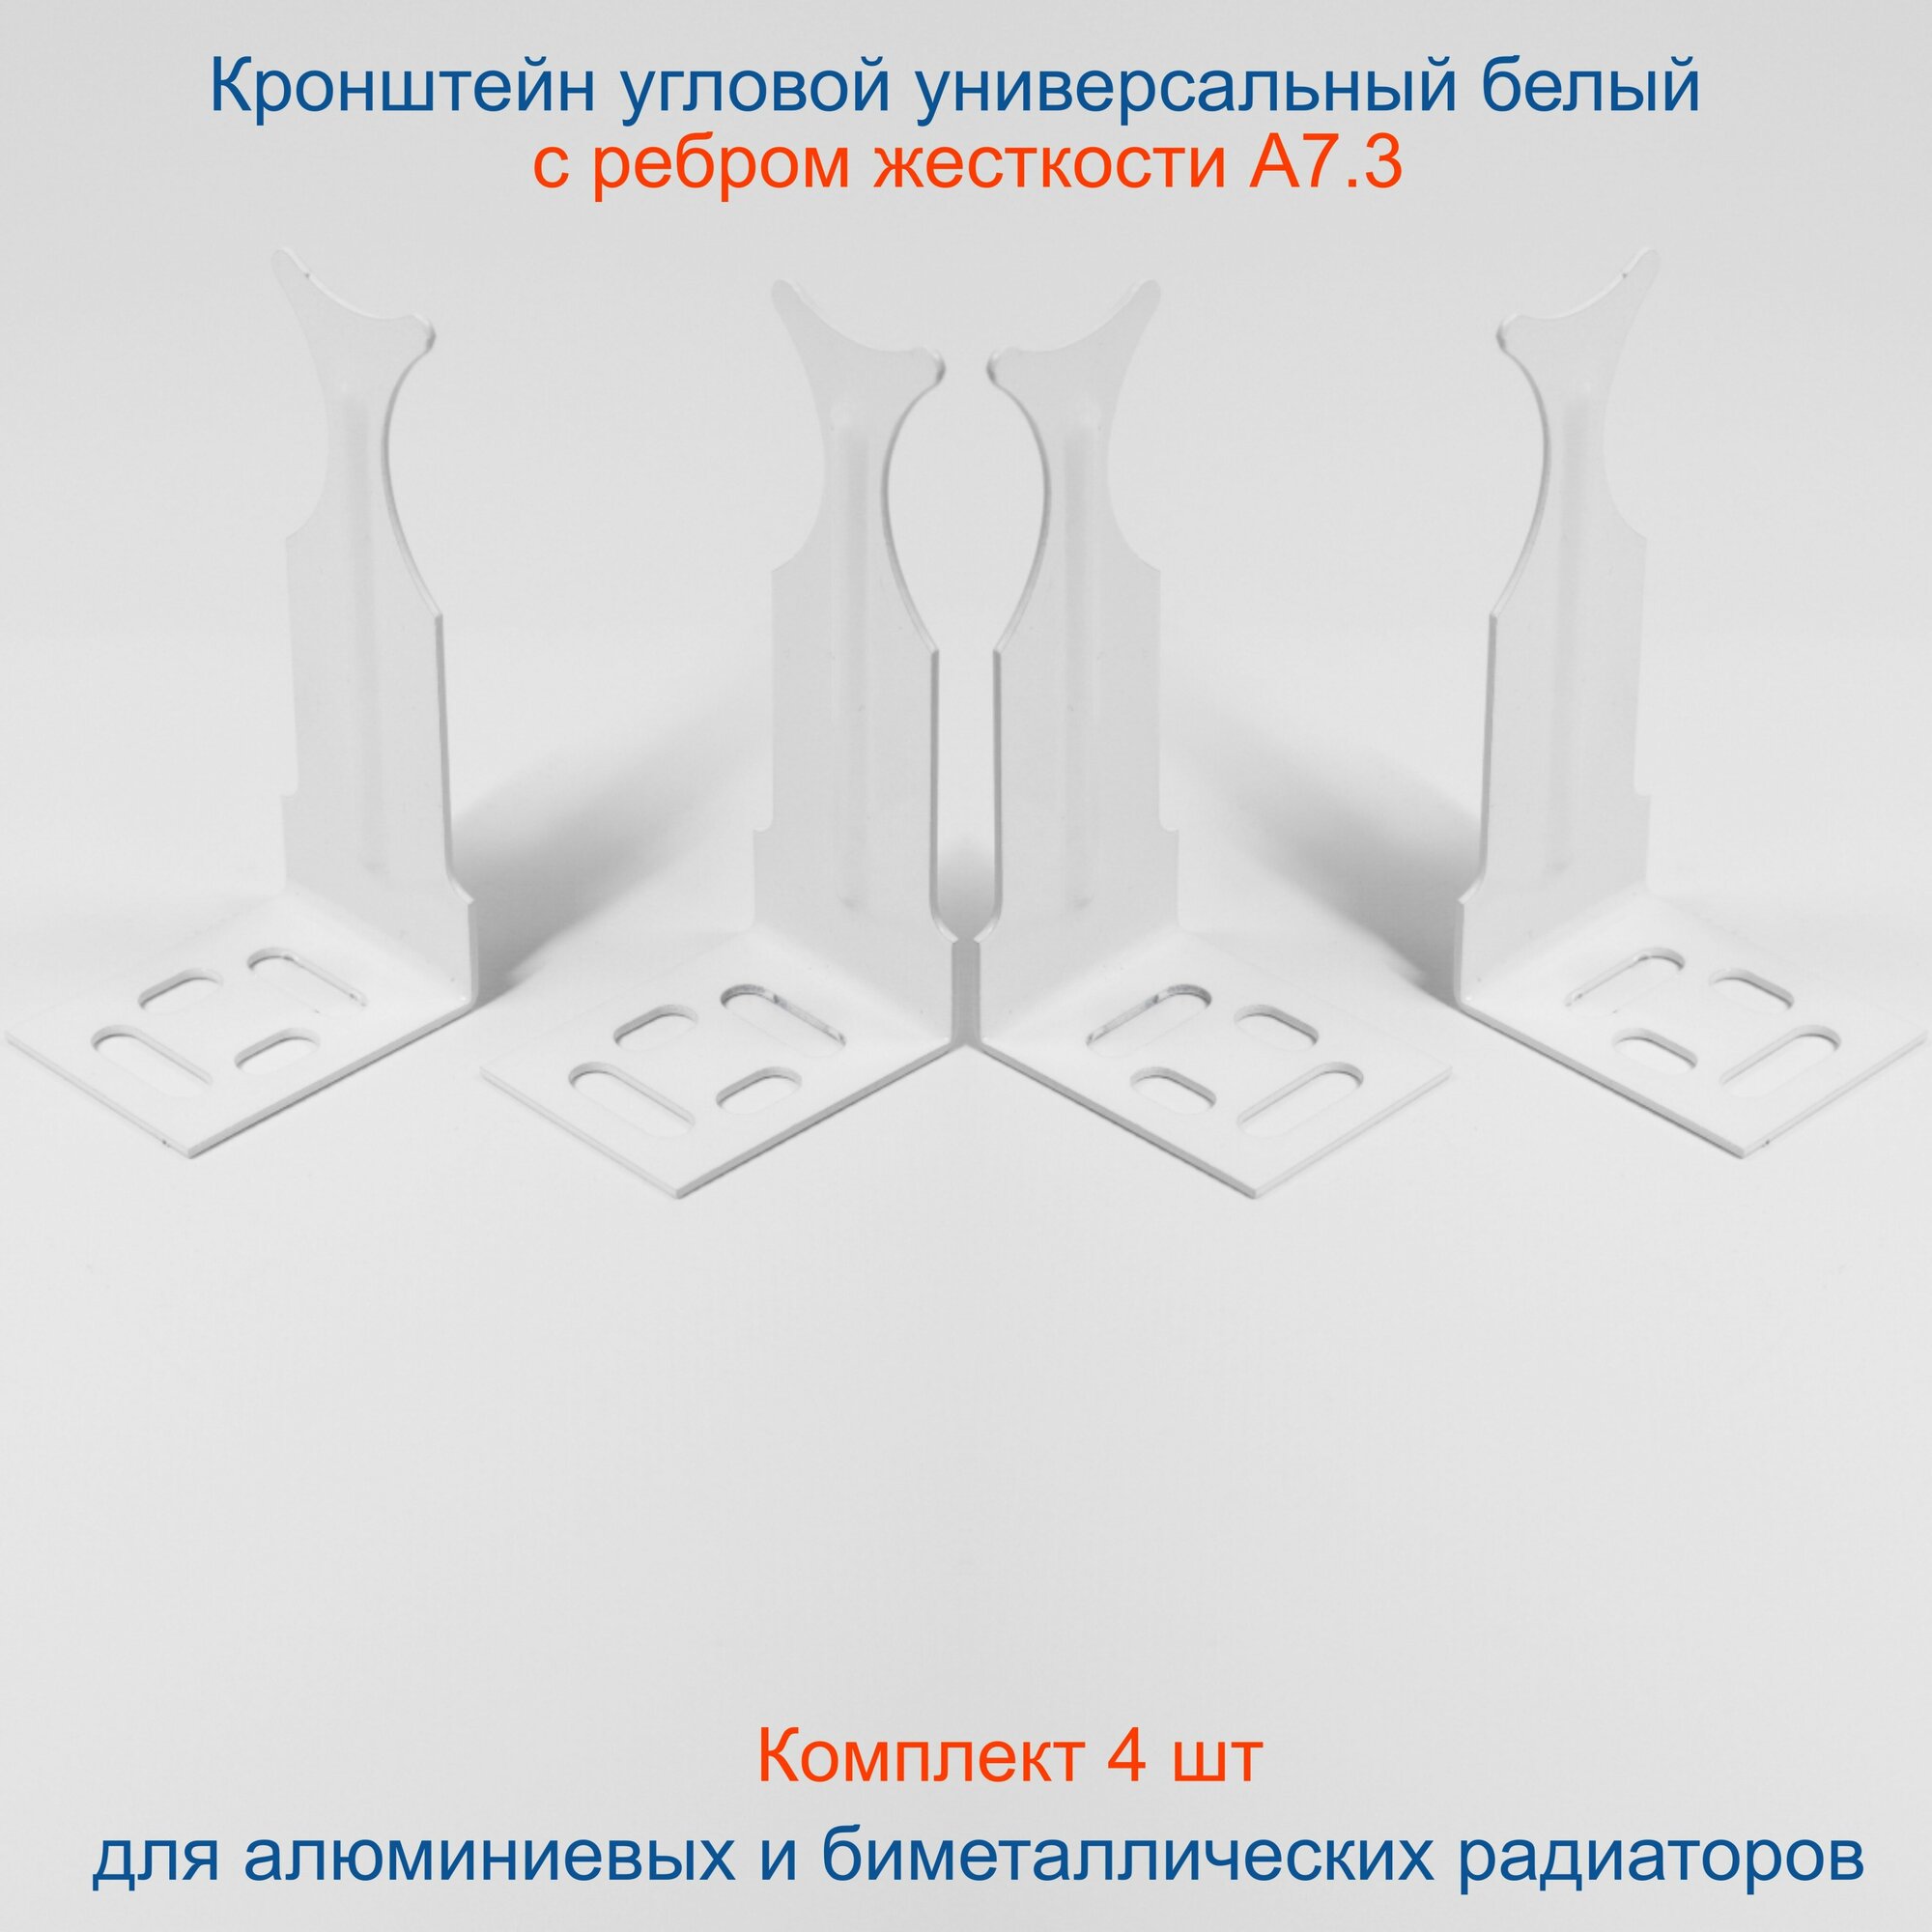 Кронштейн угловой универсальный белый Кайрос для алюминиевых и биметаллических радиаторов